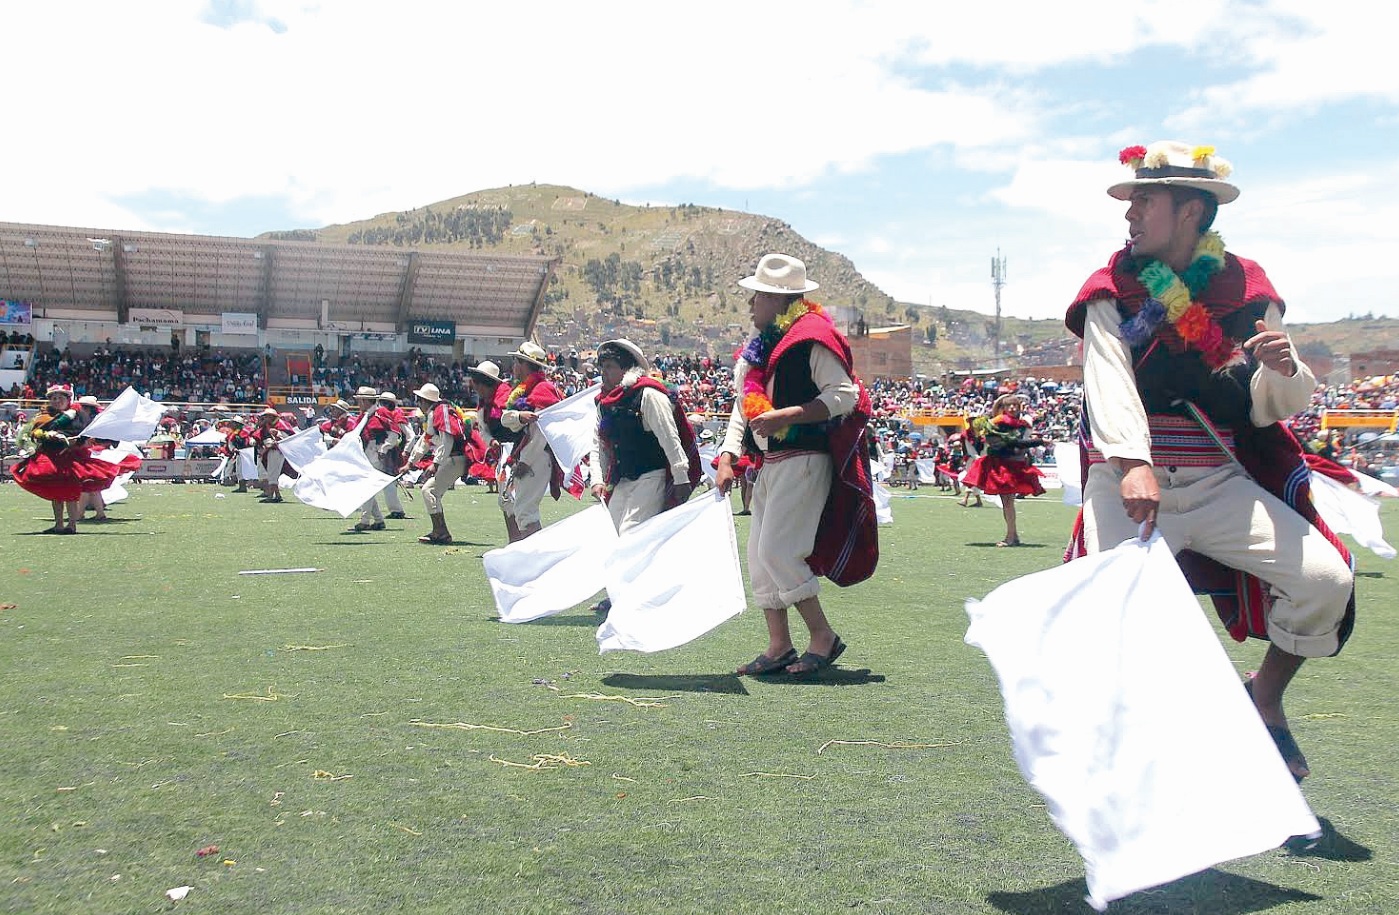 Declaran patrimonio cultural la danza Unucajas de Puno